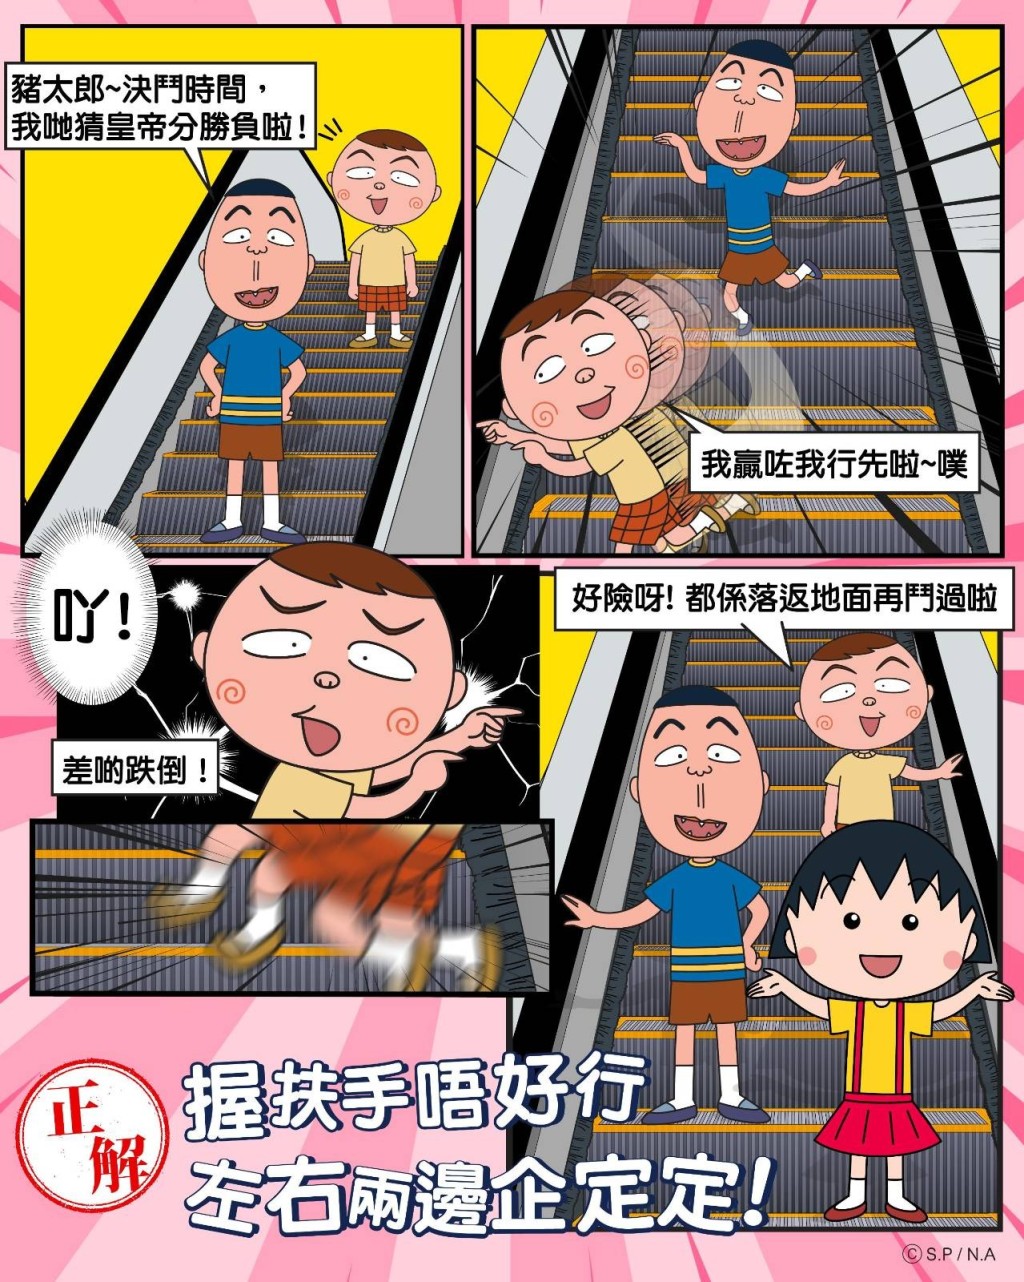 小丸子：记得「握扶手，左右两边企定定」，不要在扶手电梯上走动。网图